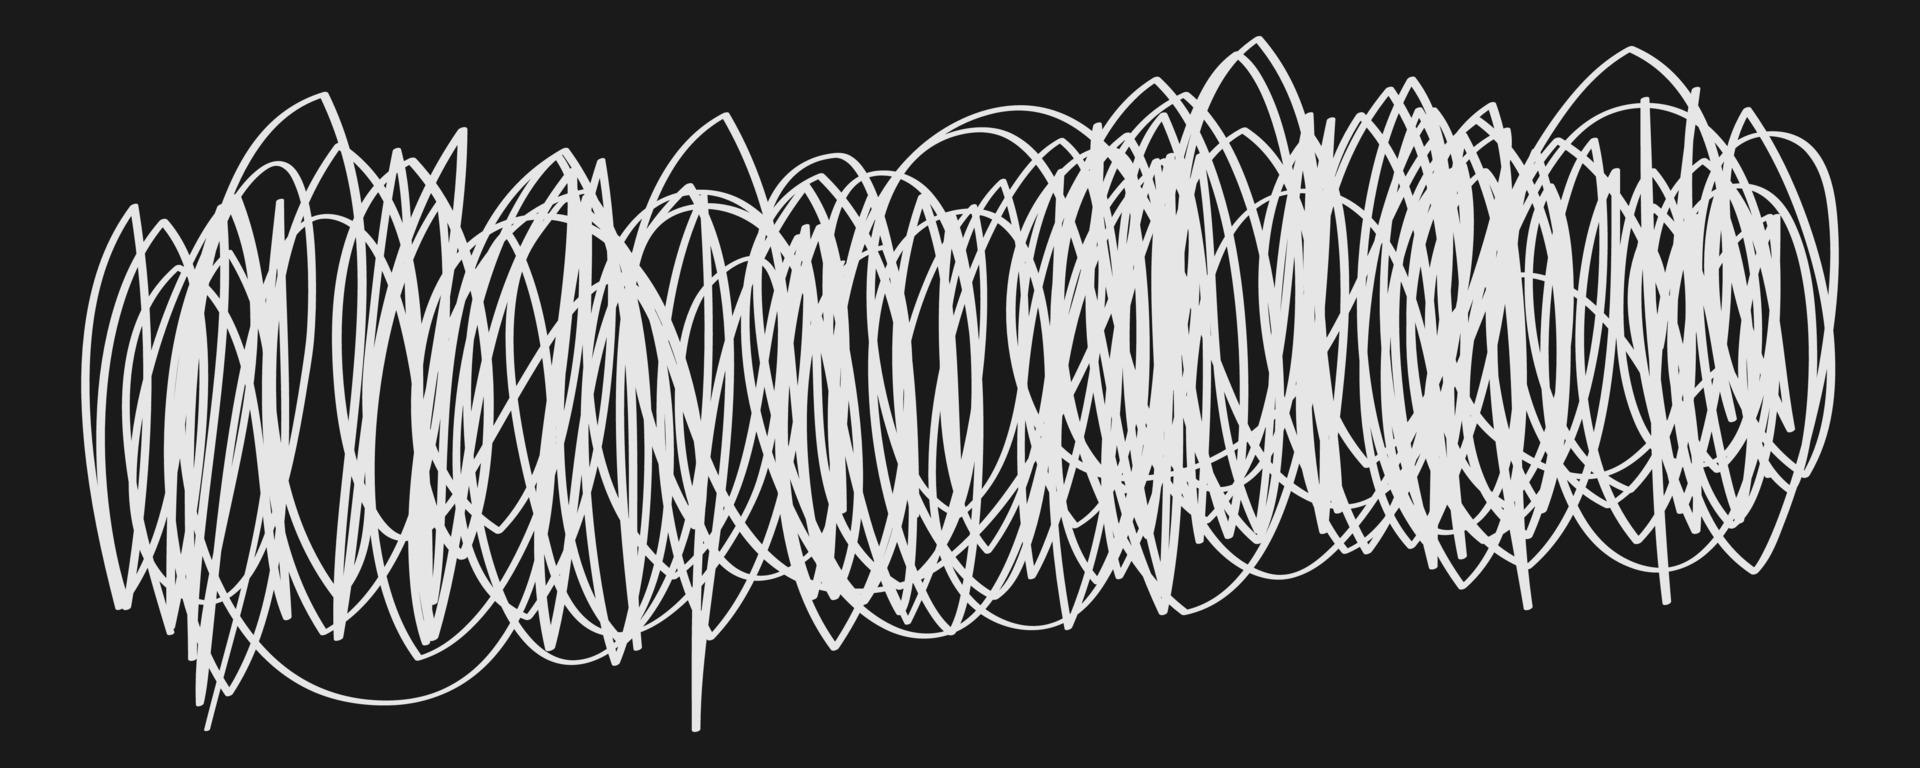 handritad abstrakt klottrar doodle vektor